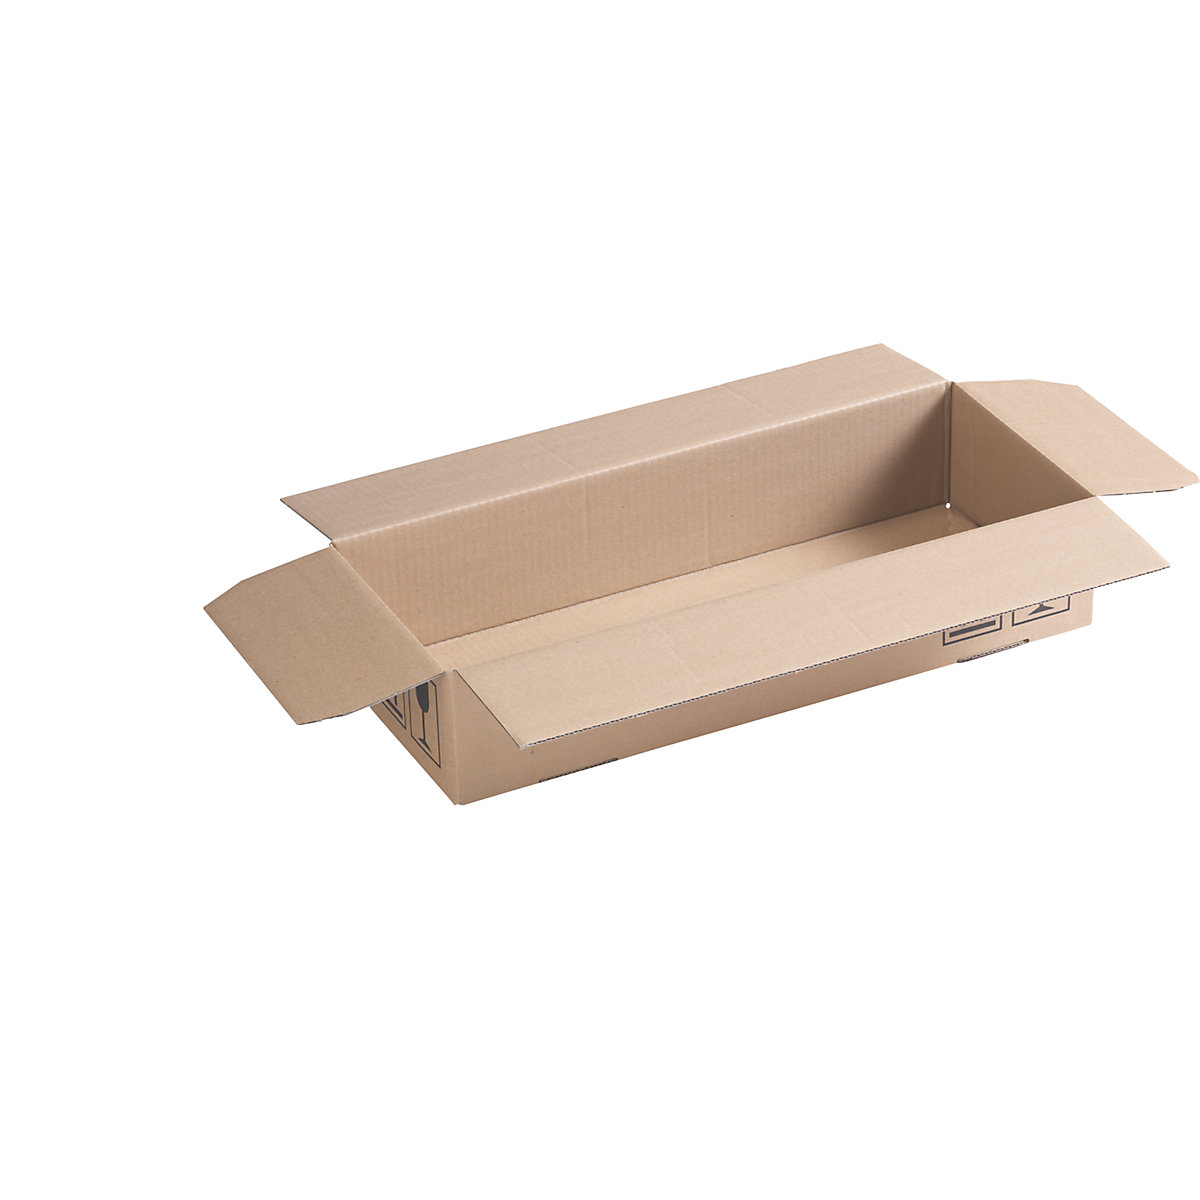 EUROKRAFTbasic – Carton pliant SPEEDBOX, simple cannelure, lot de 50, L x l x h 500 x 200 x 100 mm